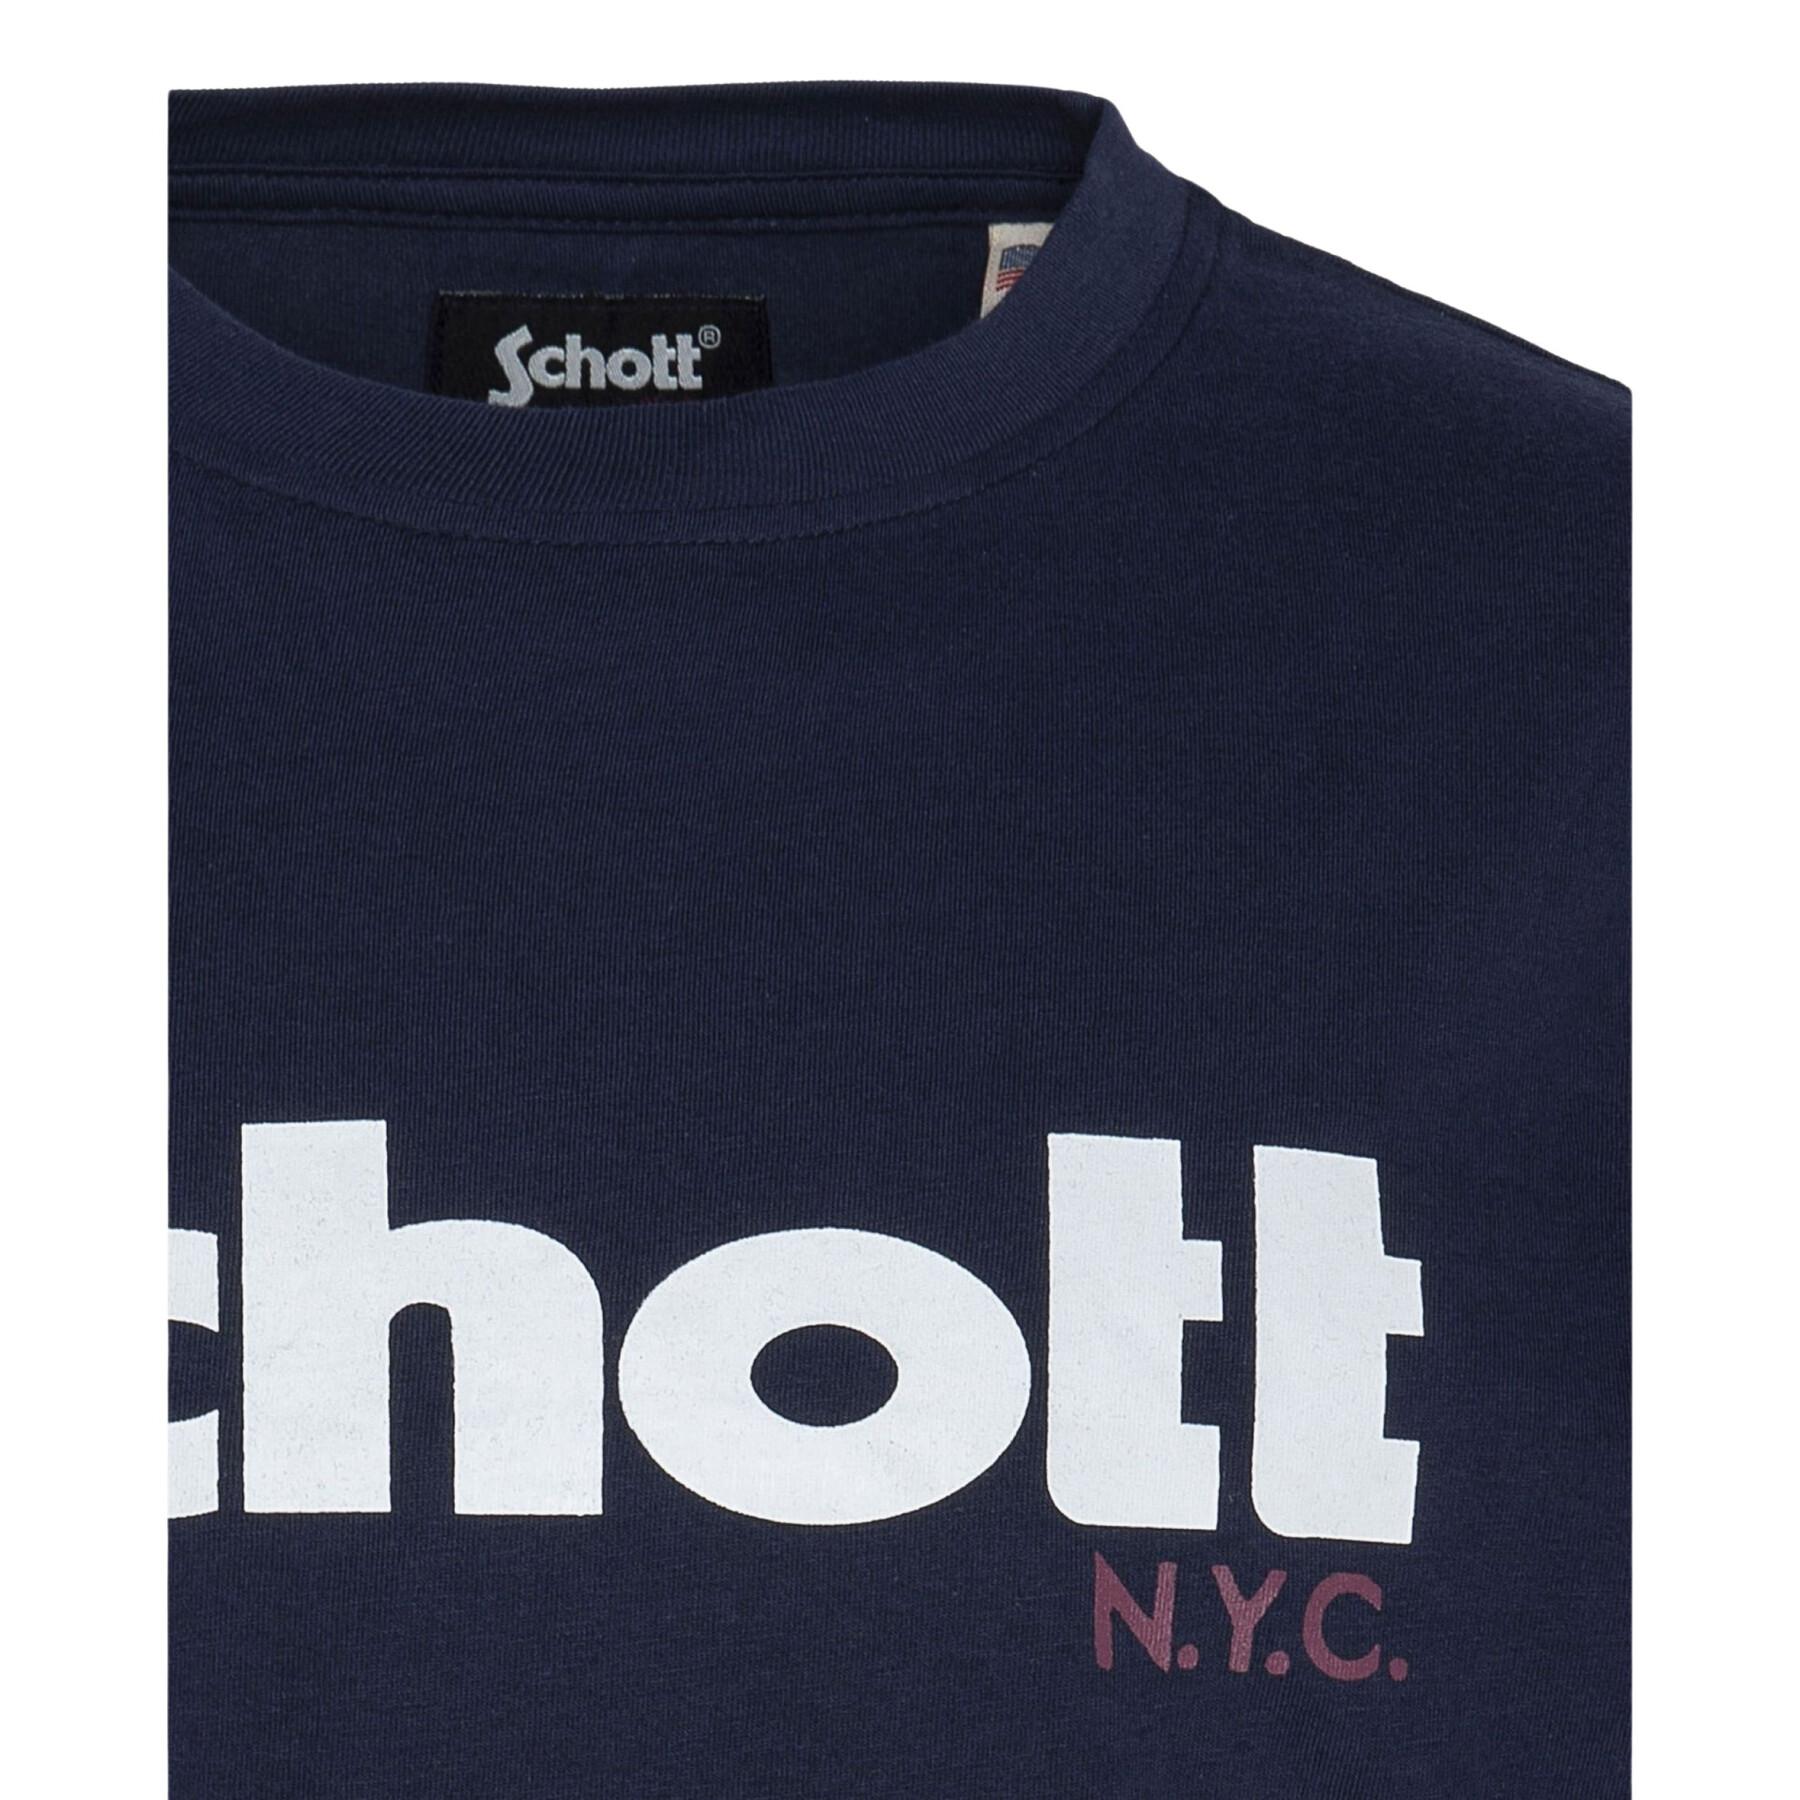 T-shirt med barnlogotyp Schott